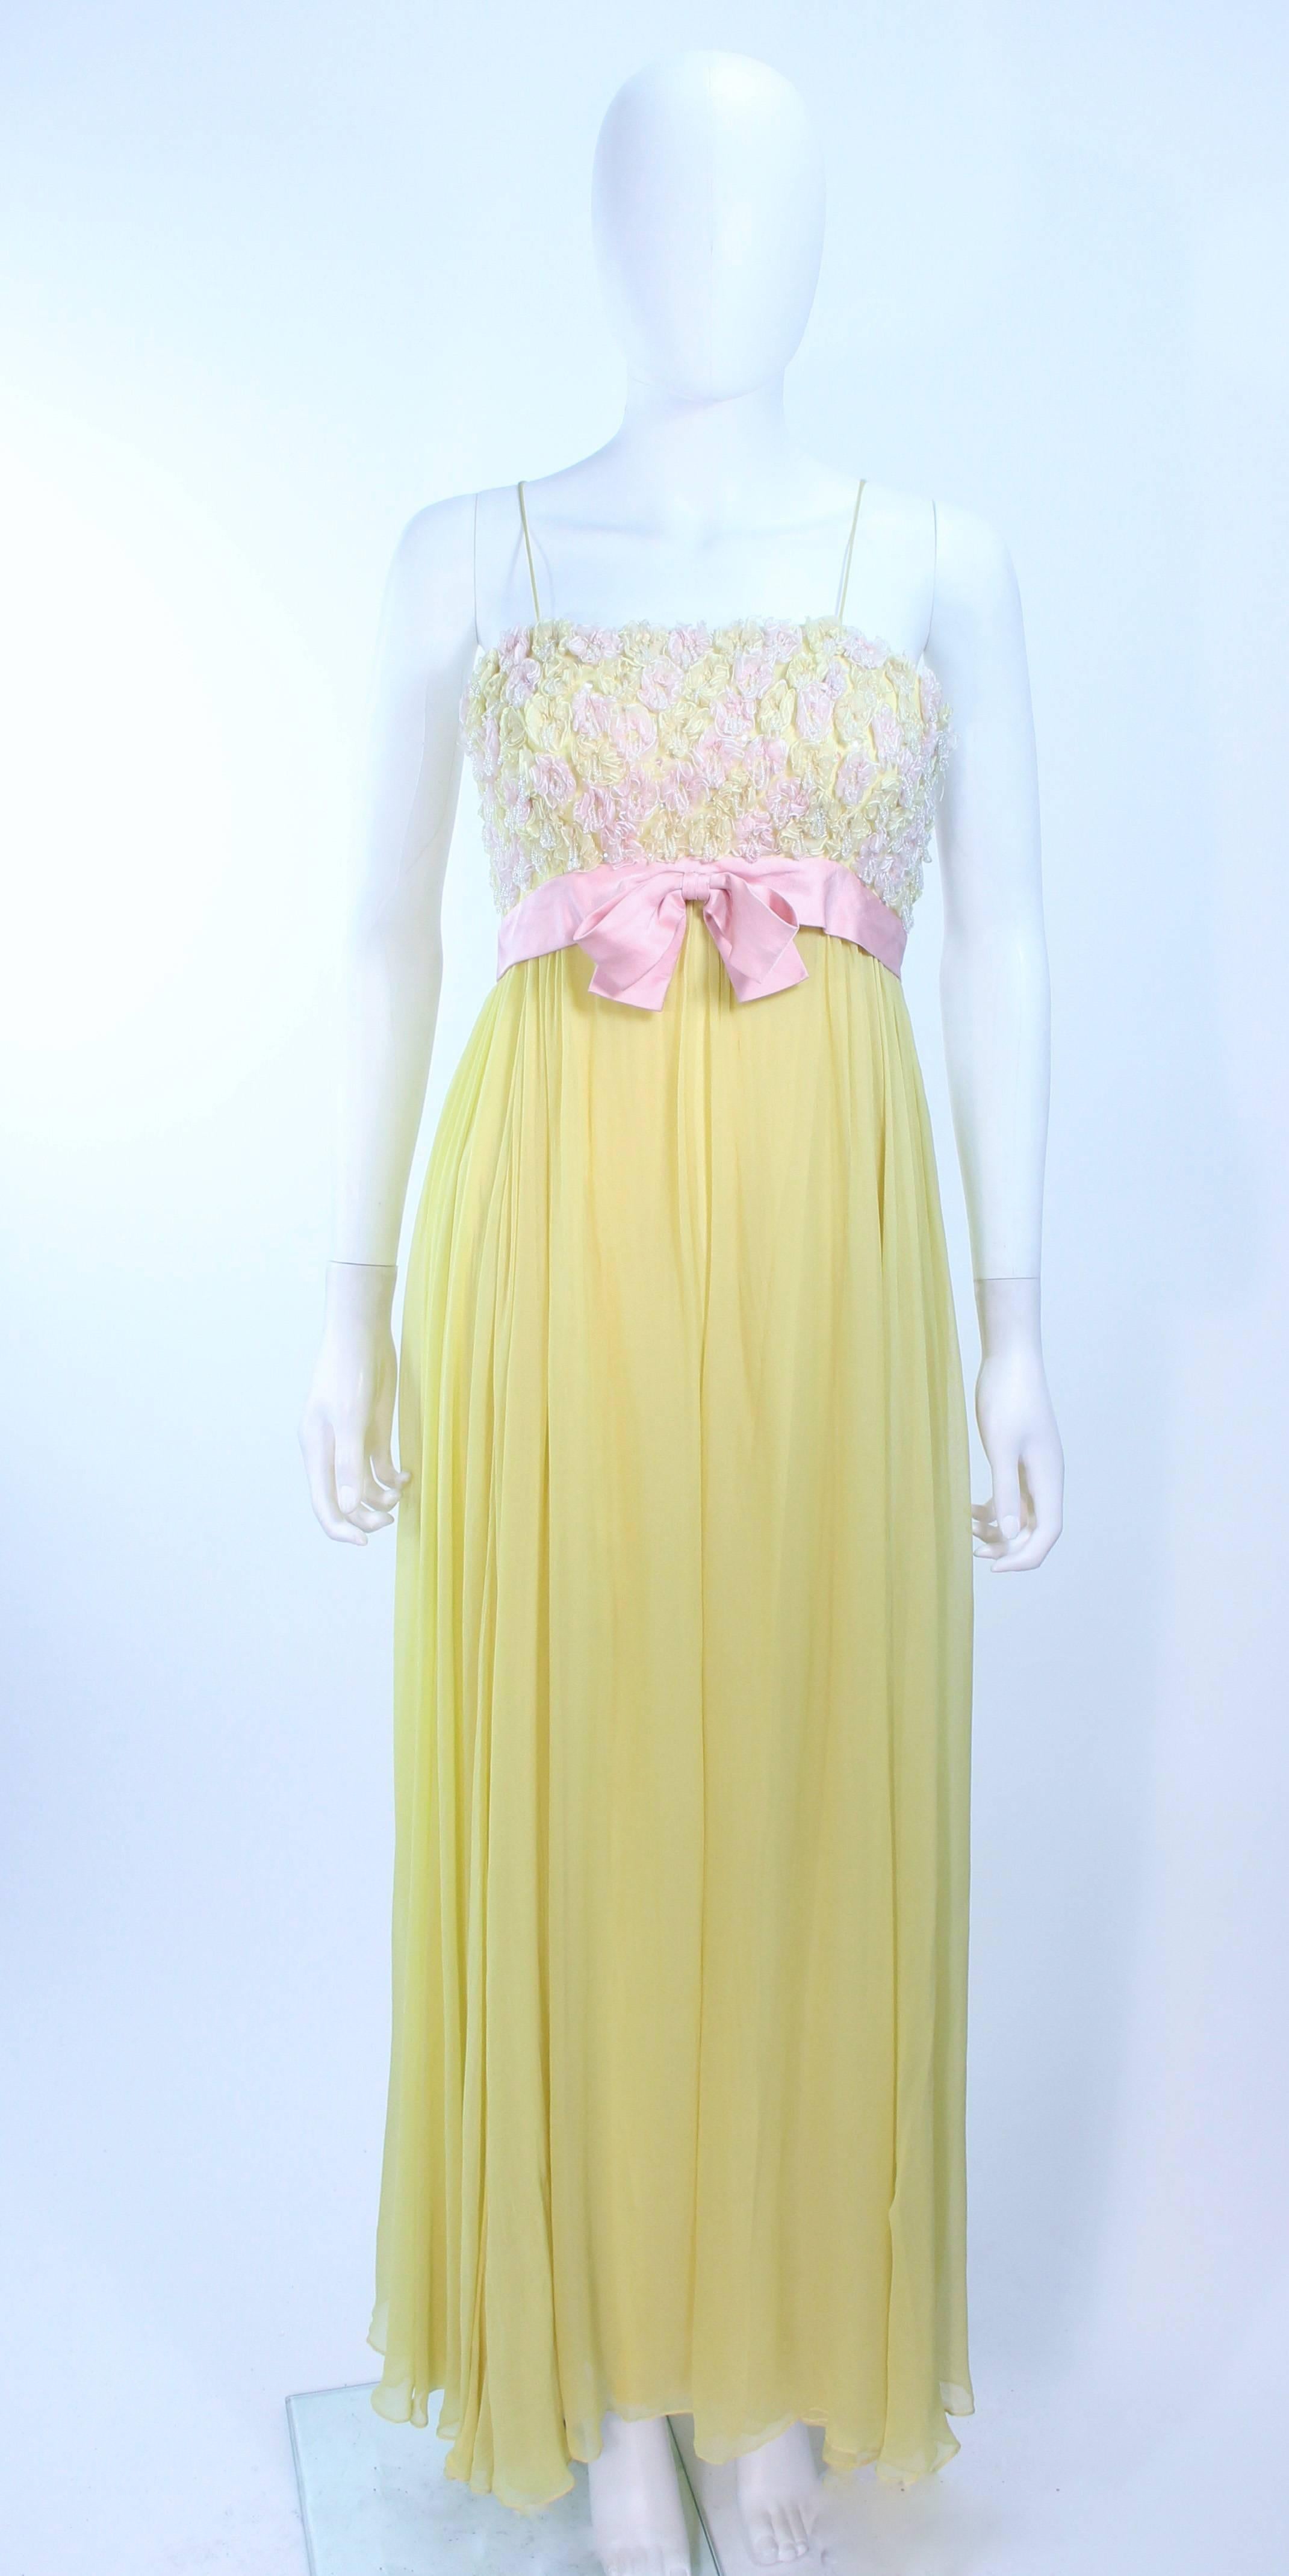 Dieses Kleid von Victoria Royal besteht aus gelbem Seidenchiffon mit rosa Blumenapplikationen und Strasssteinen. Es gibt einen Reißverschluss in der Mitte des Rückens. In ausgezeichnetem Vintage-Zustand, eine kleine Flickstelle am Rock, kaum